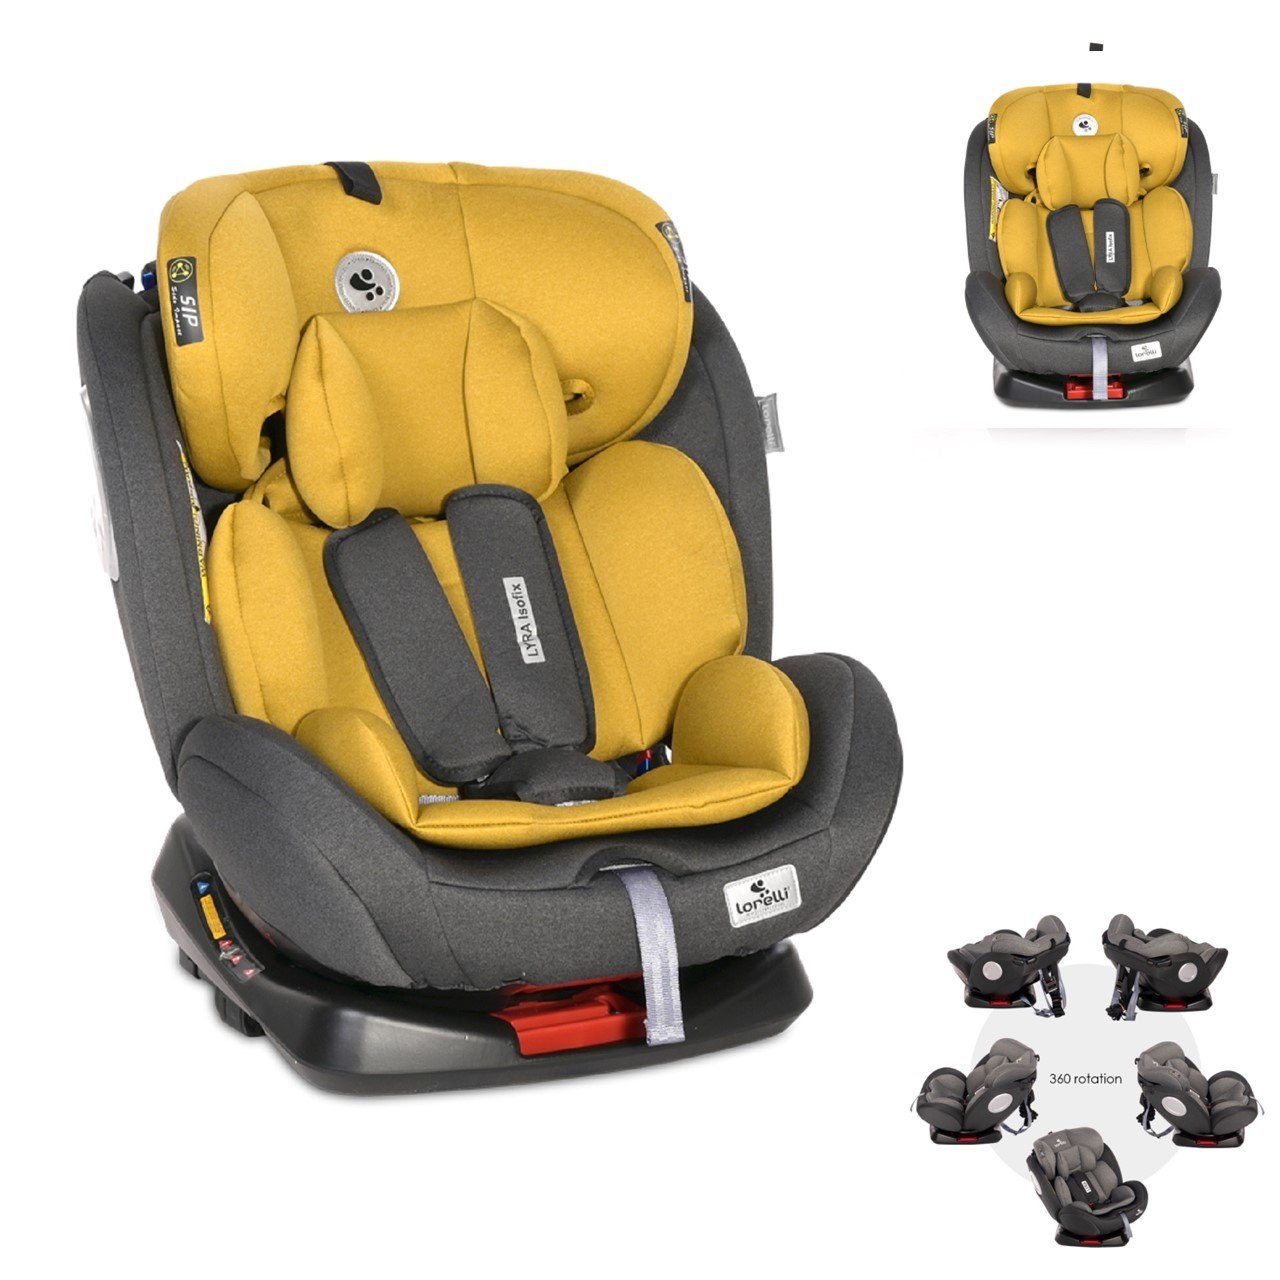 Lorelli Autokindersitz Kindersitz 5-Punkt-Gurt Gruppe 0+/1/2/3, (0 bis: kg, kg) - Kissen, Lyra 36 36 gelb